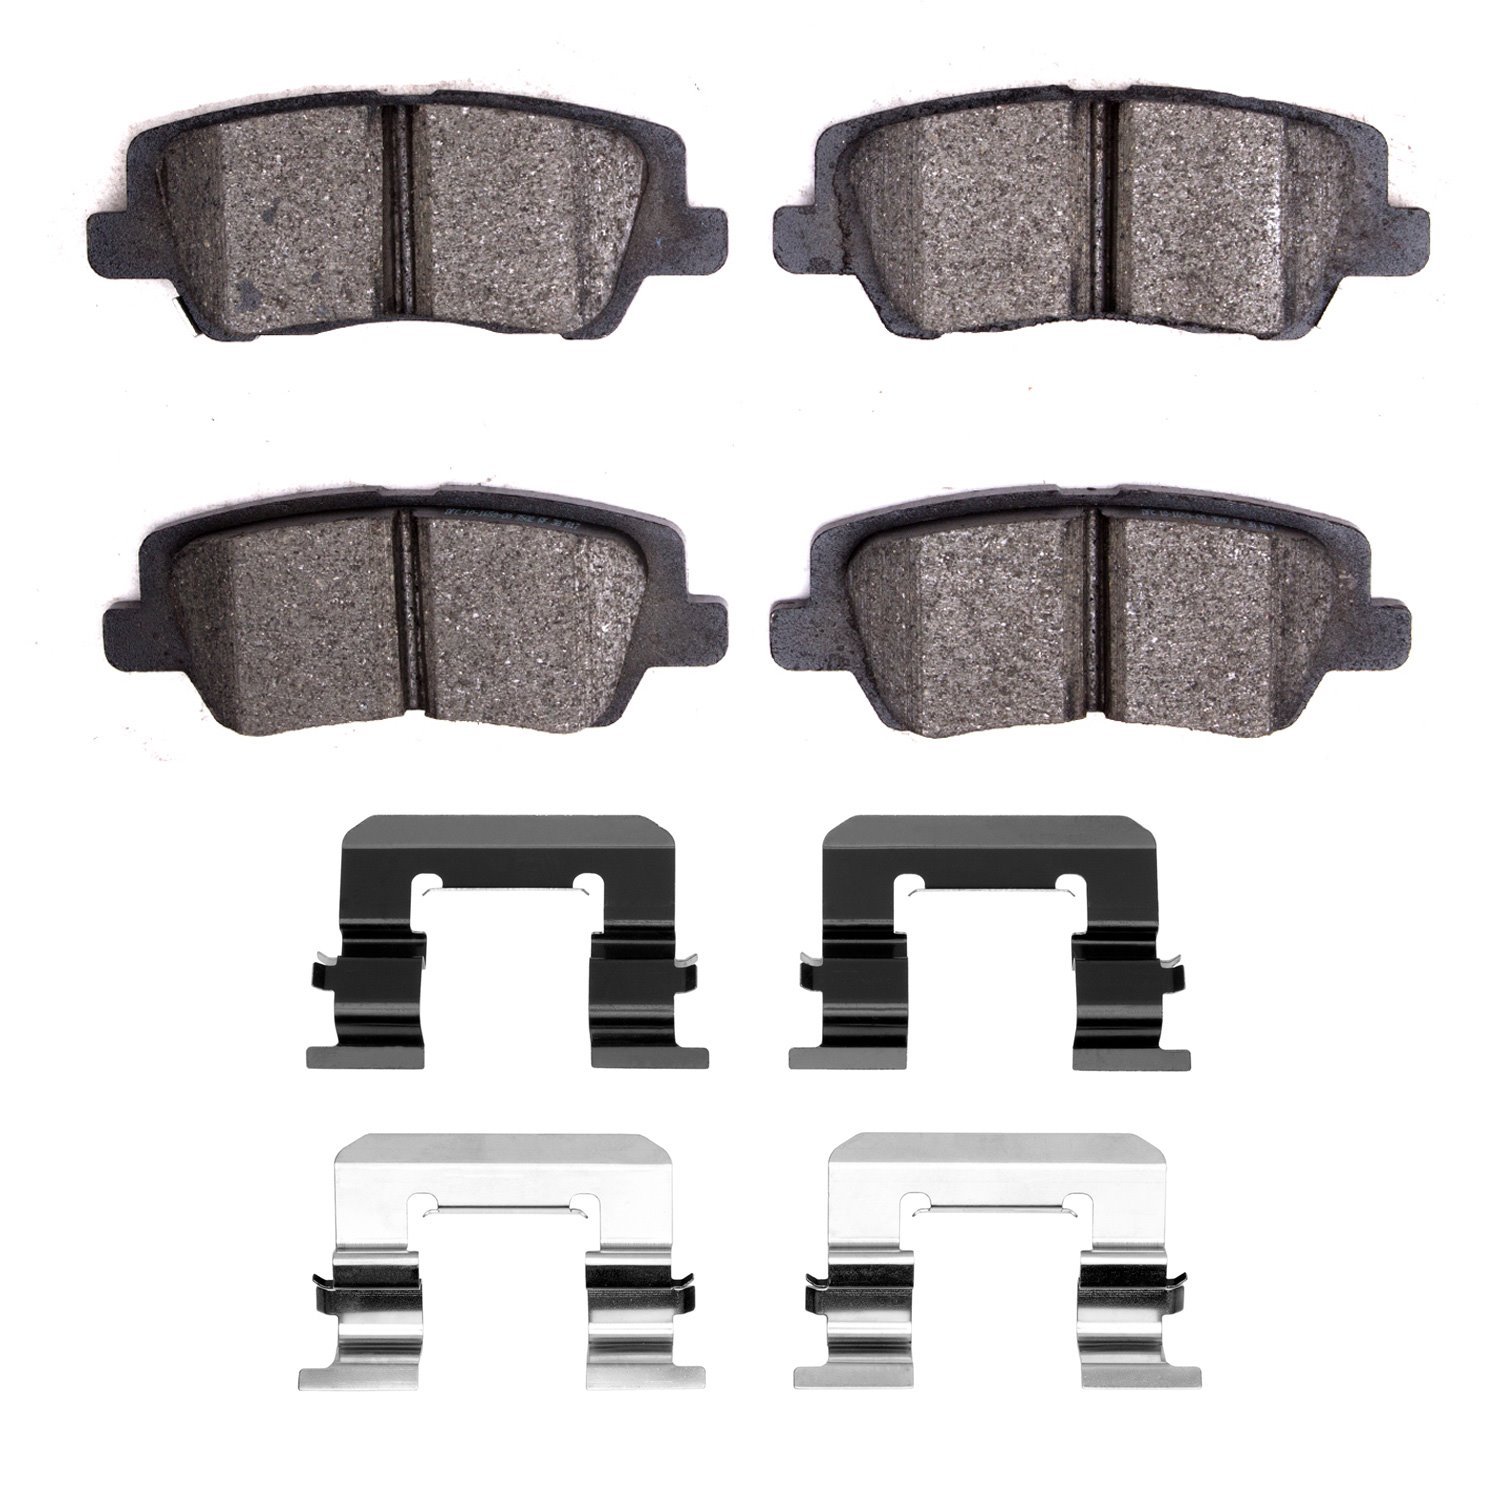 1552-1659-01 5000 Advanced Low-Metallic Brake Pads & Hardware Kit, 2013-2019 GM, Position: Rear